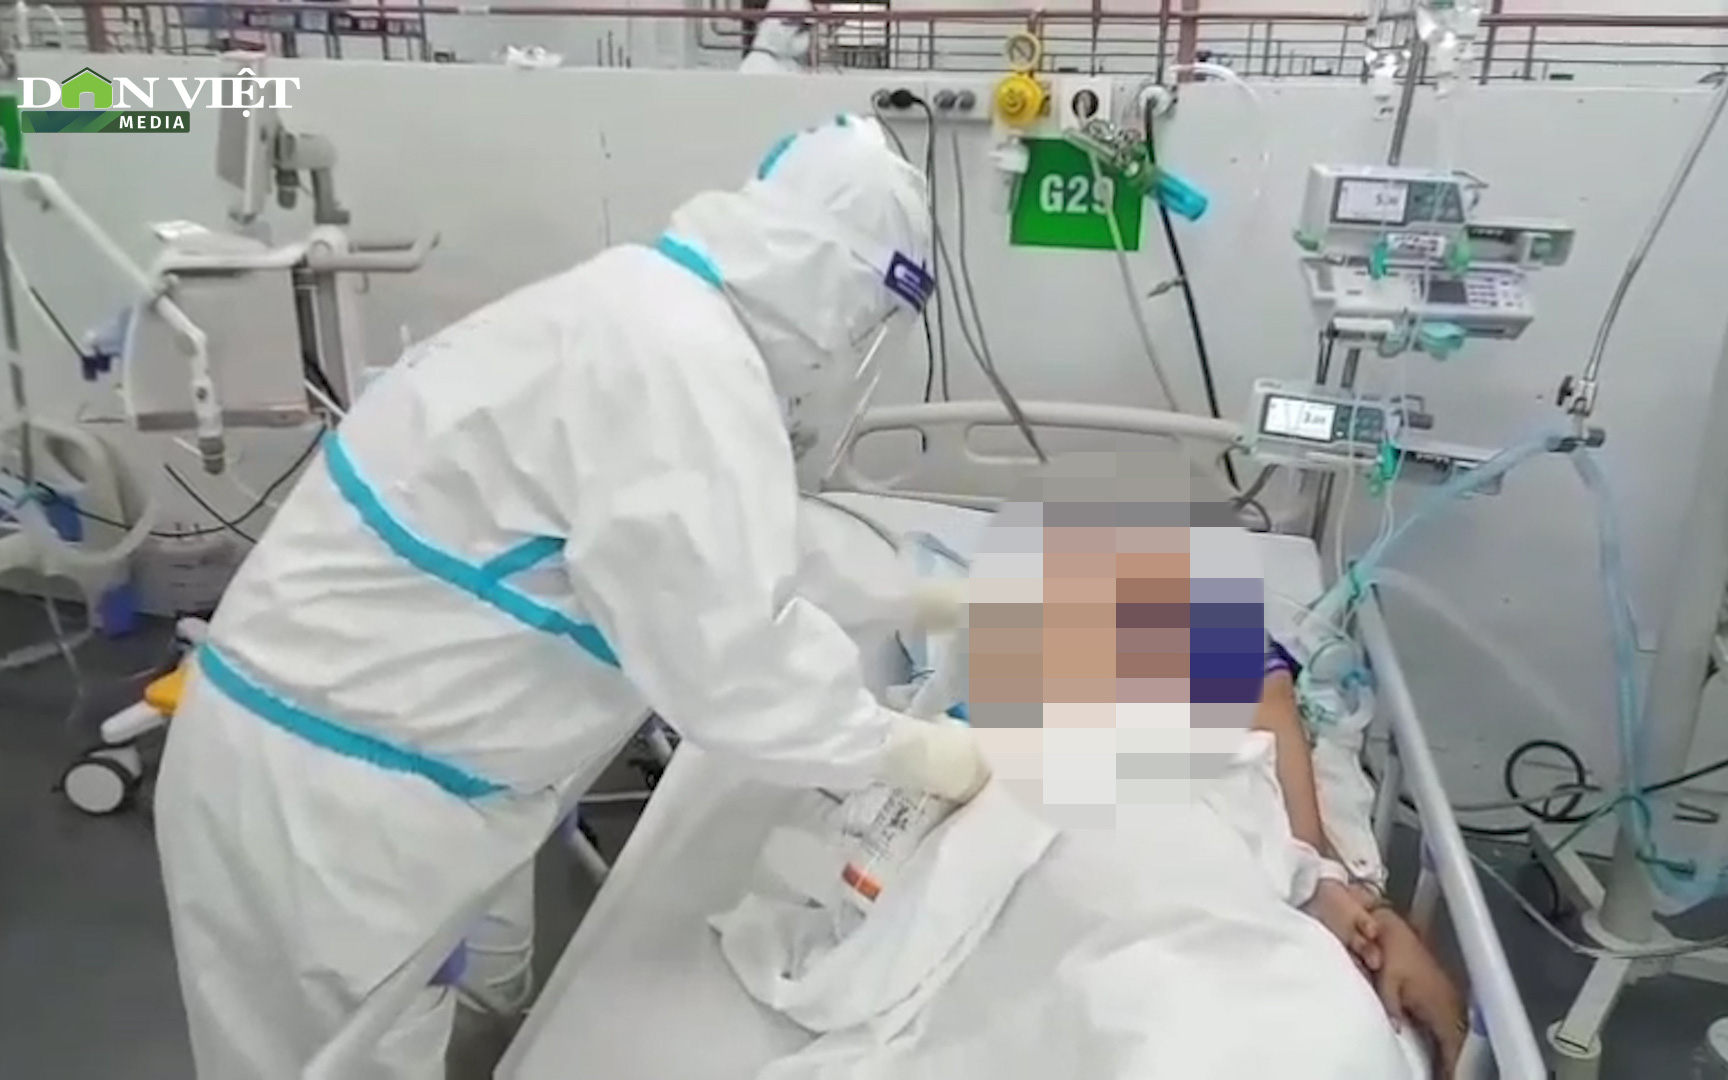 Video: Cận cảnh cứu chữa bệnh nhân Covid-19 nguy kịch tại Trung tâm thuộc Bệnh viện T.Ư Huế ở TP.HCM 